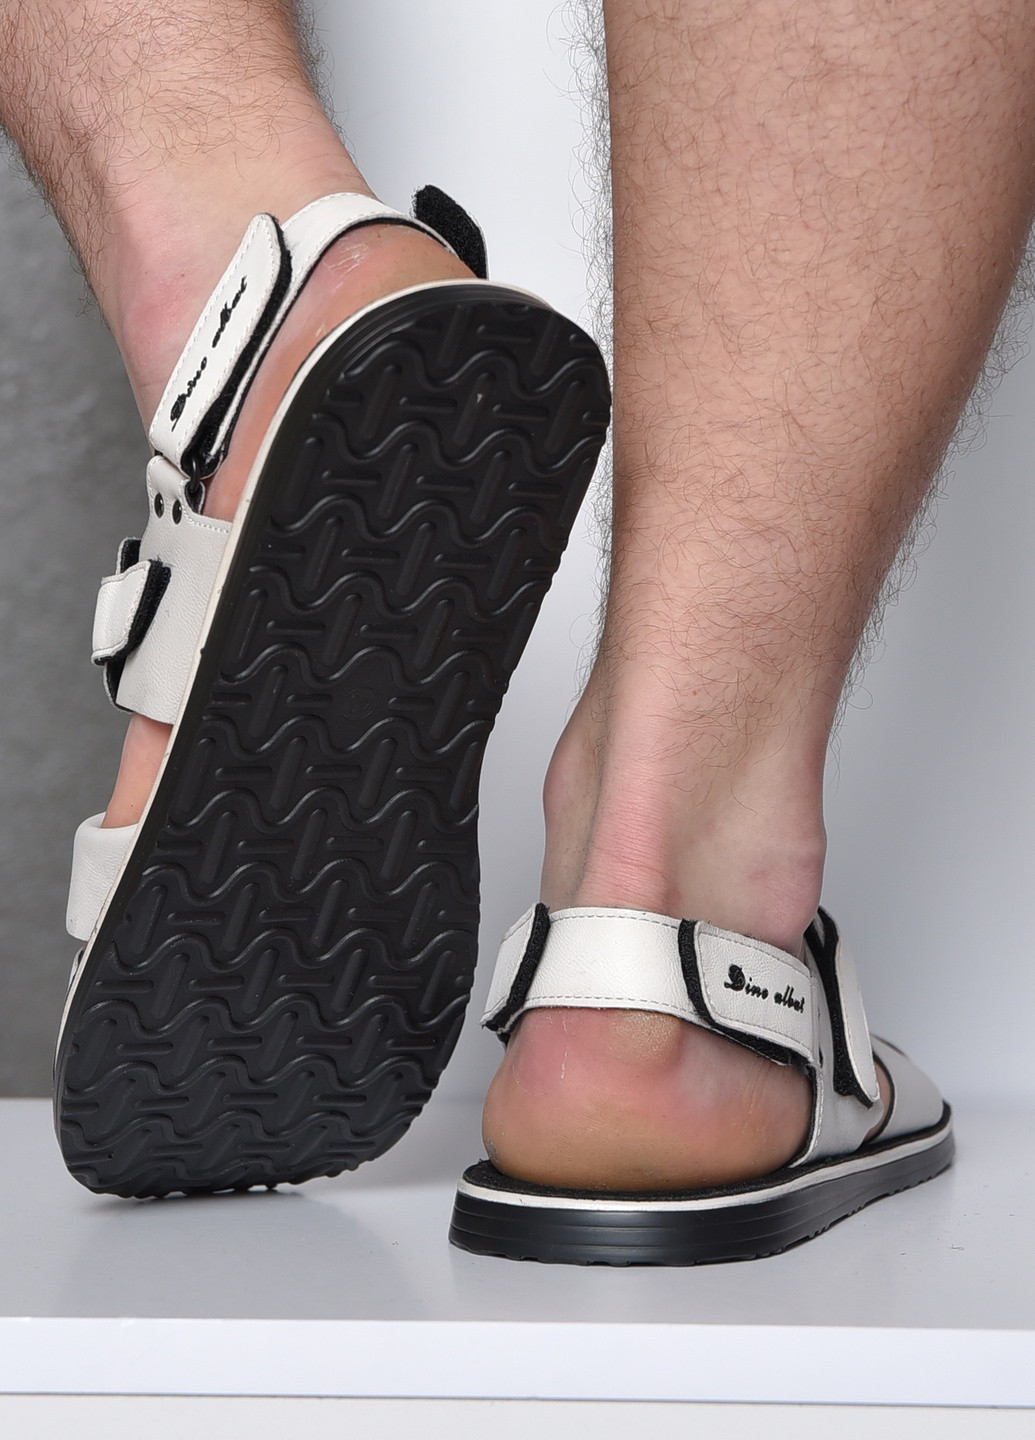 Пляжные сандалии мужские серого цвета на липучке Let's Shop на липучке